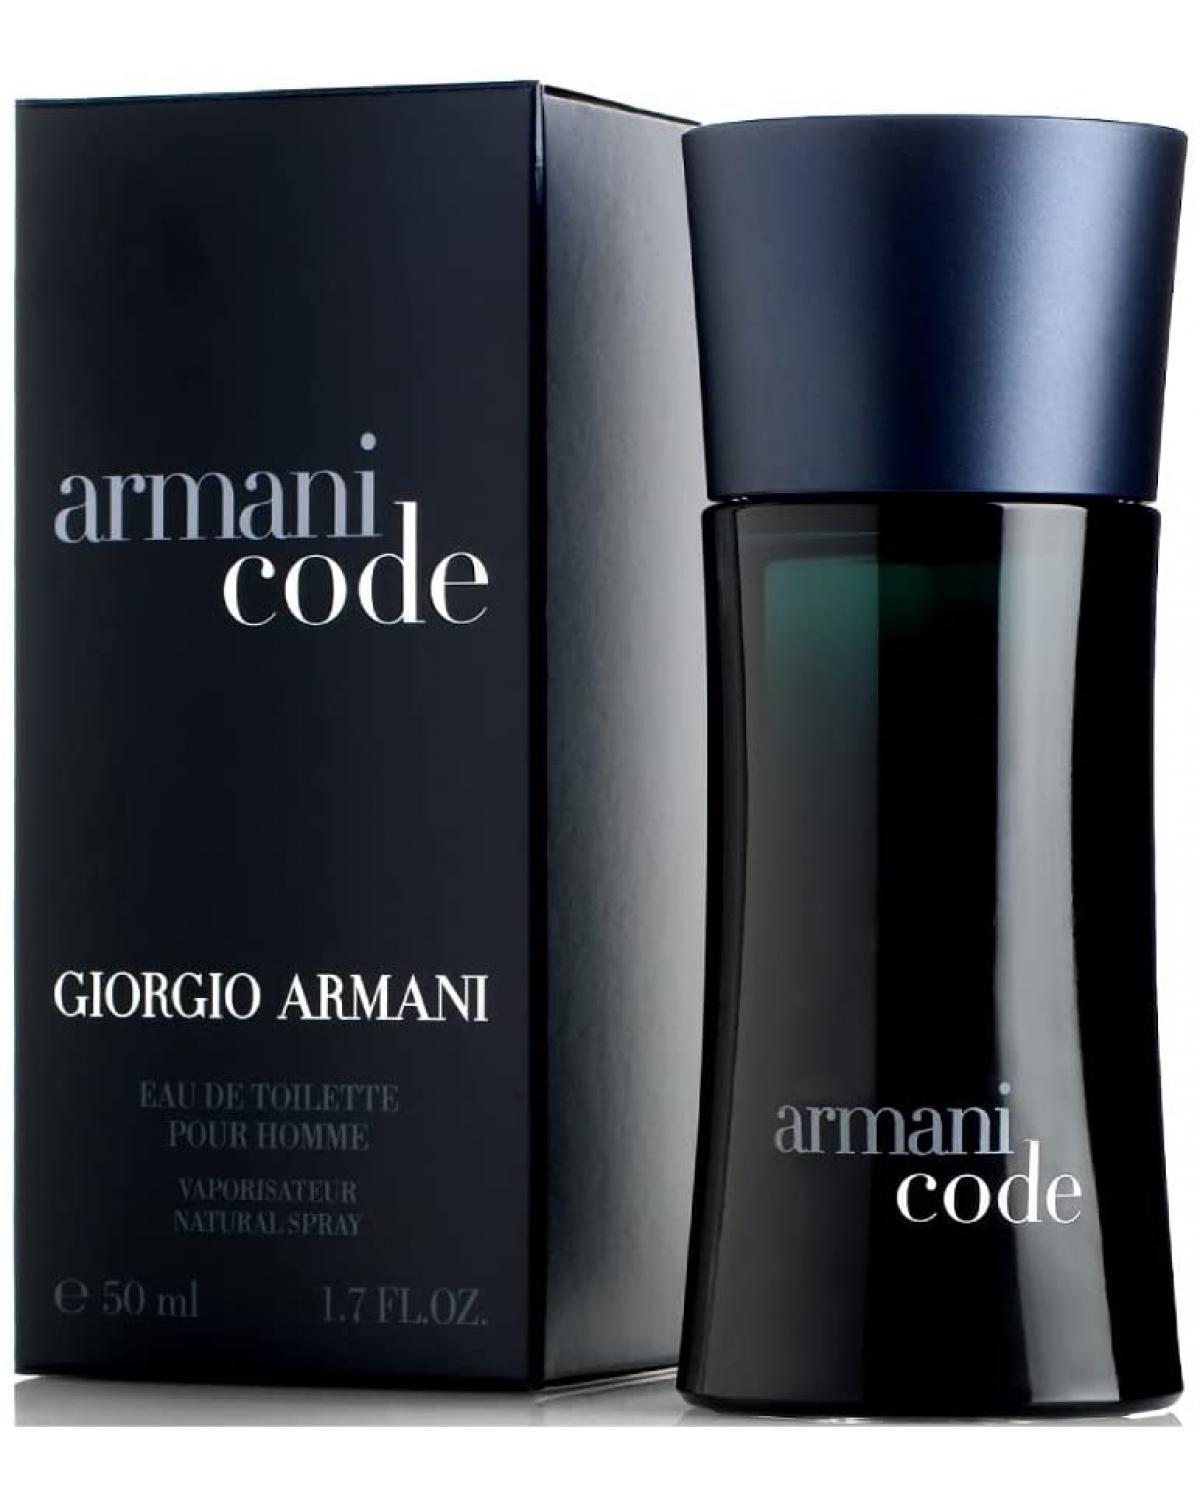 Armani Code Giorgio Armani - Perfume Masculino - Eau de Toilette - 50ml